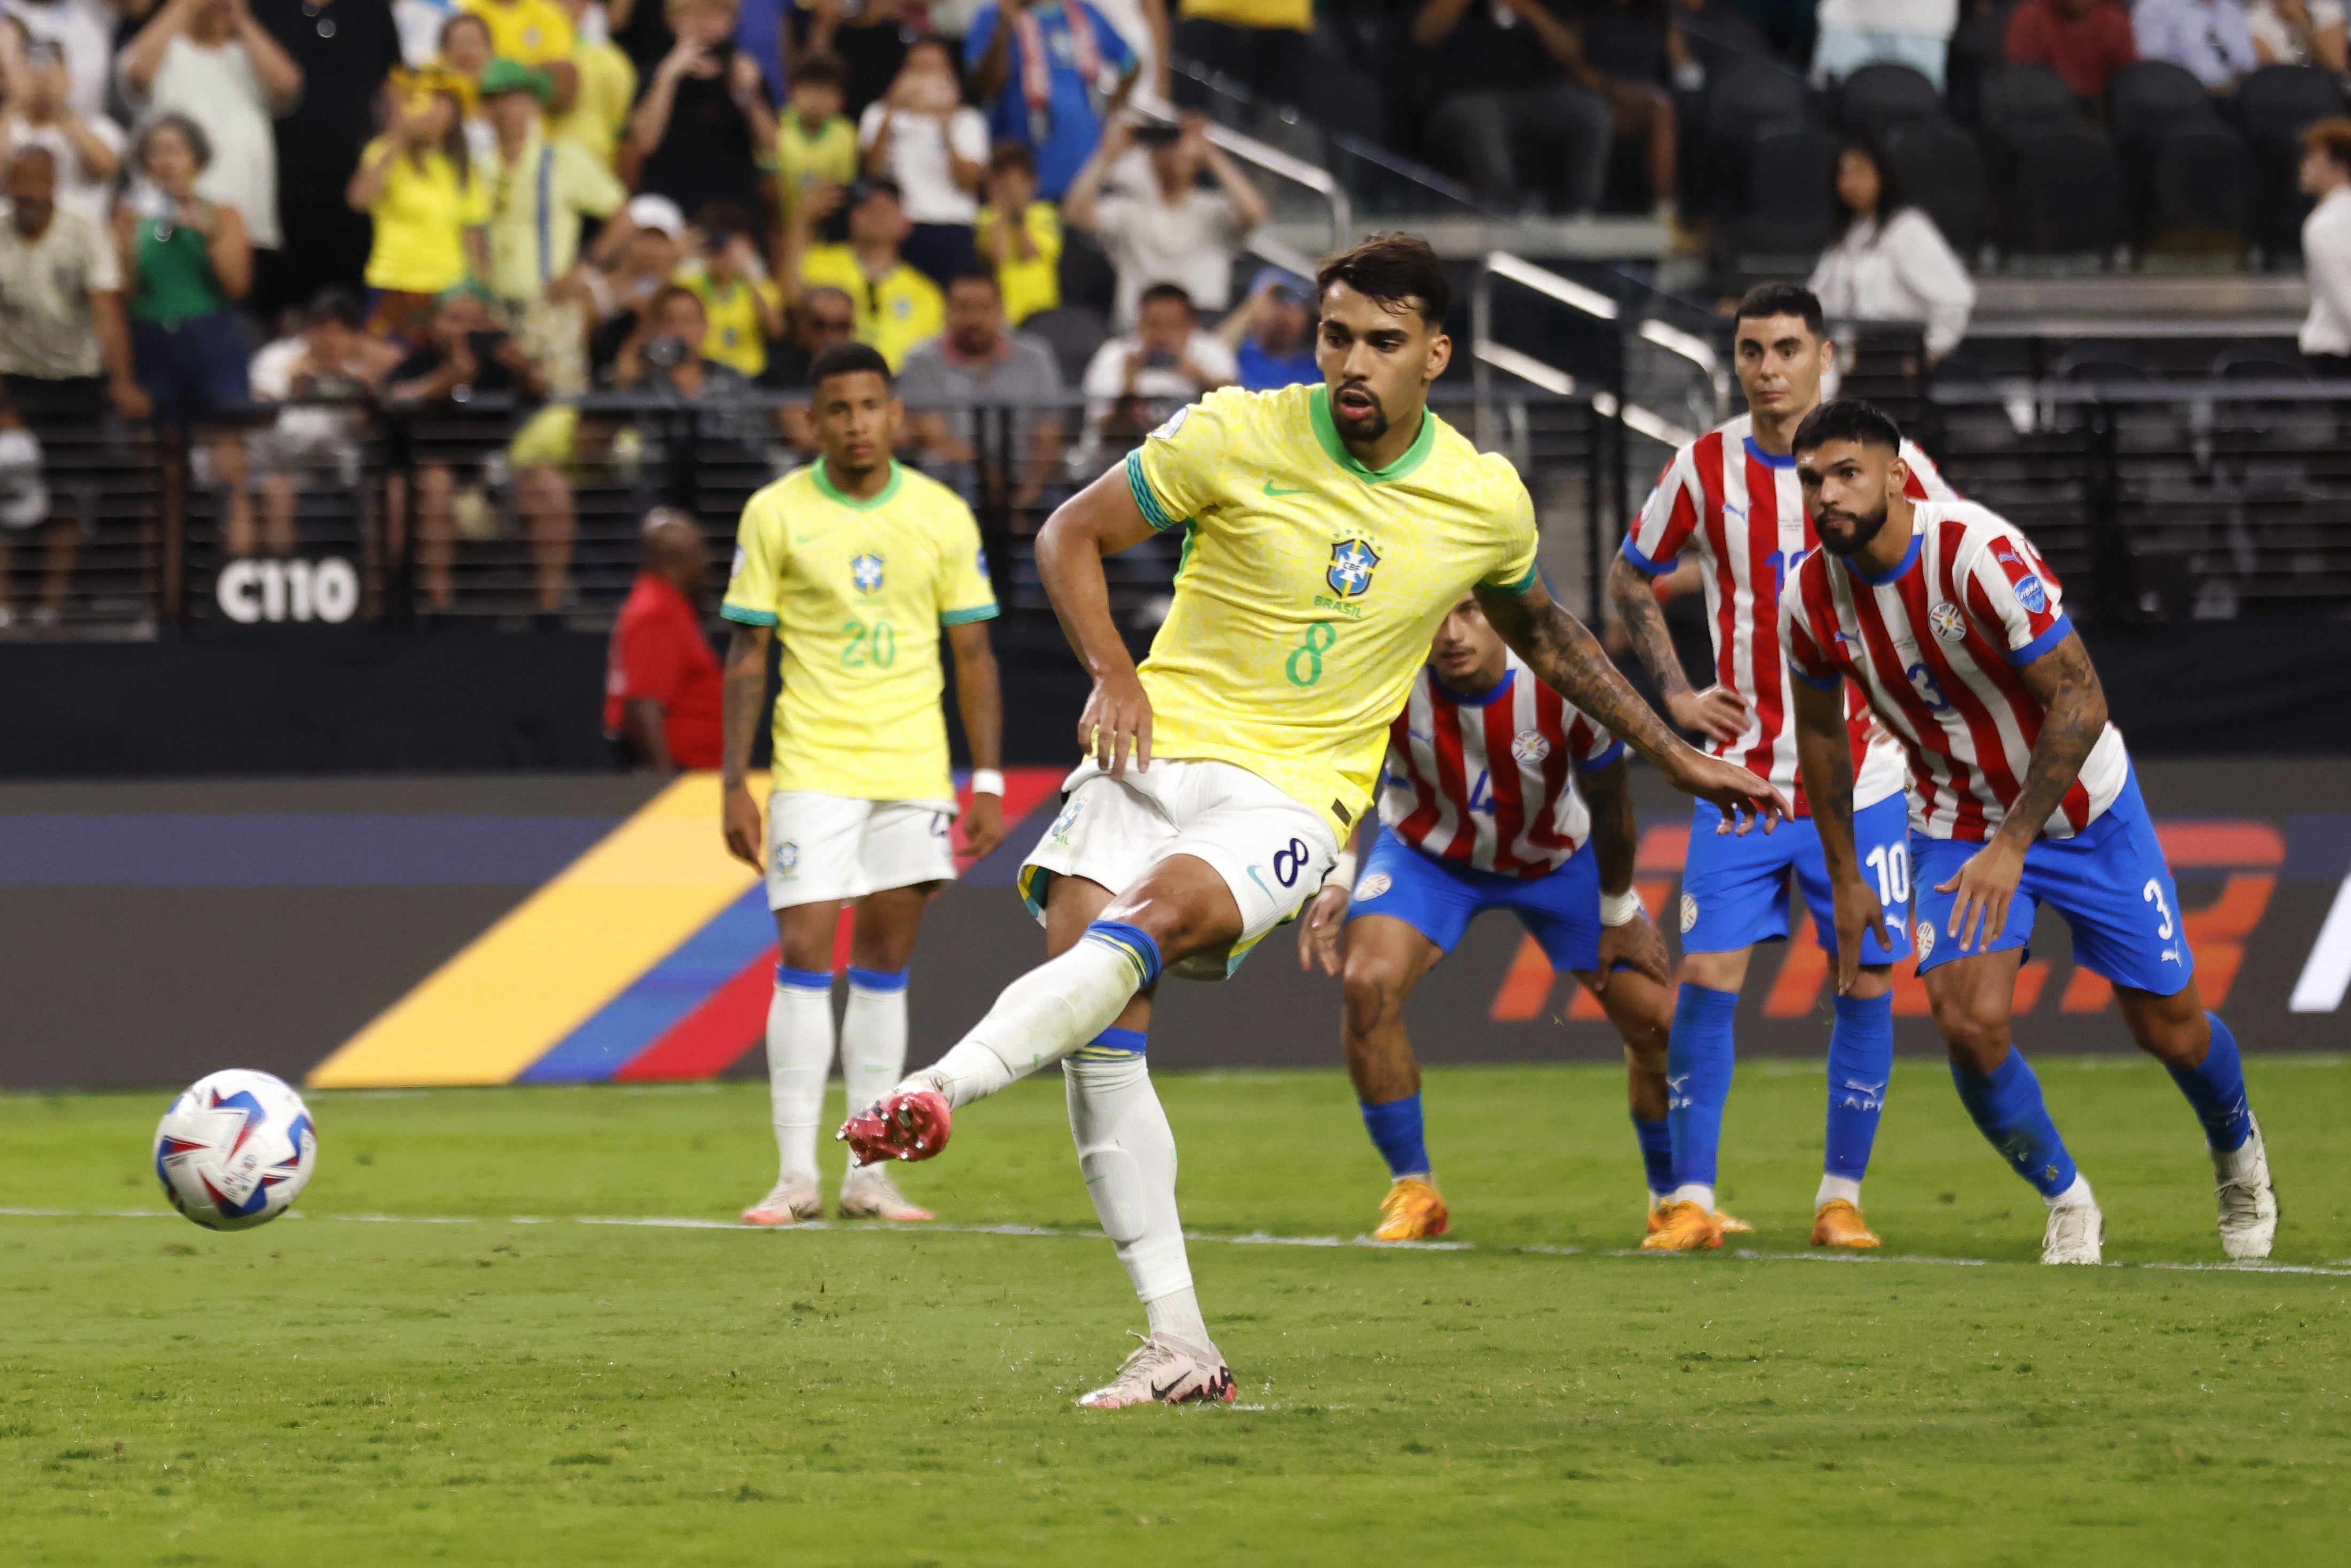 Brazil midfielder Lucas Paqueta scores against Paraguay